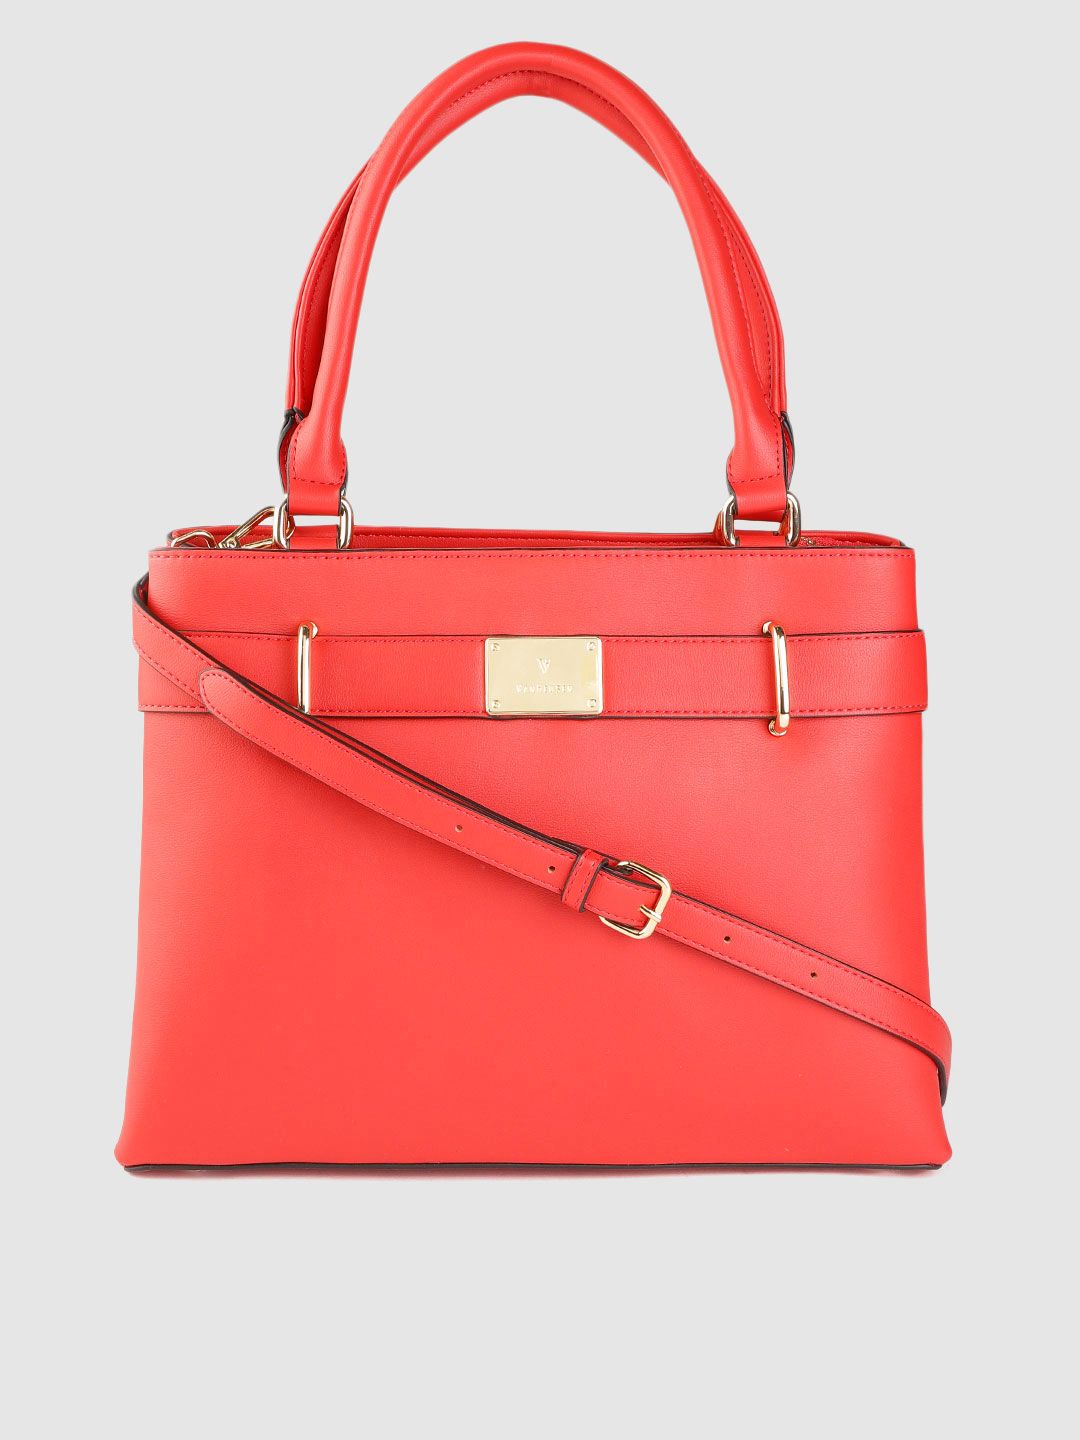 Van Heusen Red Solid Shoulder Bag Price in India